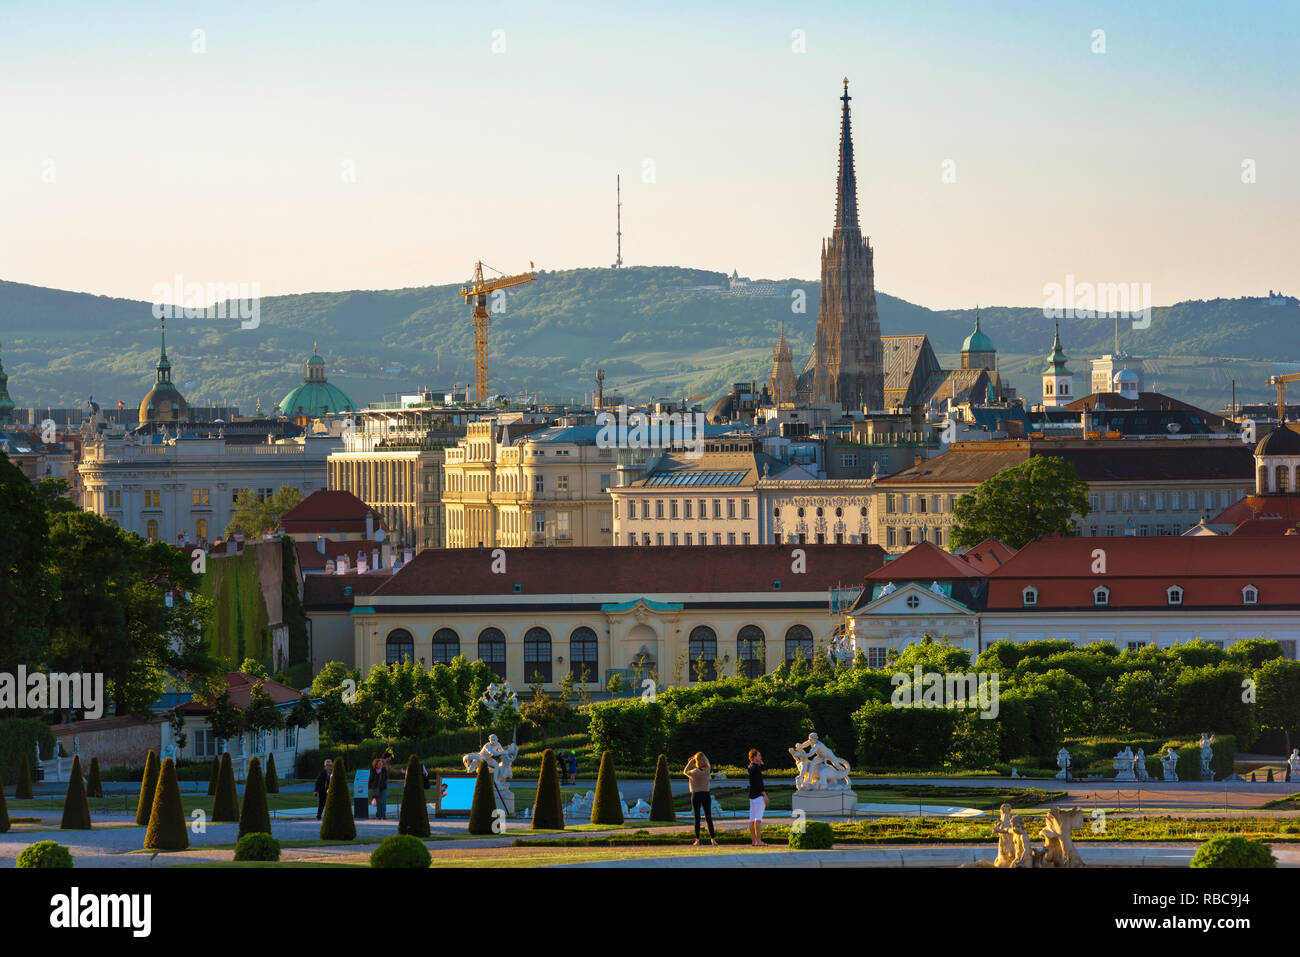 Wiener Stadtbild, mit Blick auf die Wiener Innenstadt Skyline mit dem Schloss Belvedere im Vordergrund und Stephansdom spire Darüber hinaus. Stockfoto